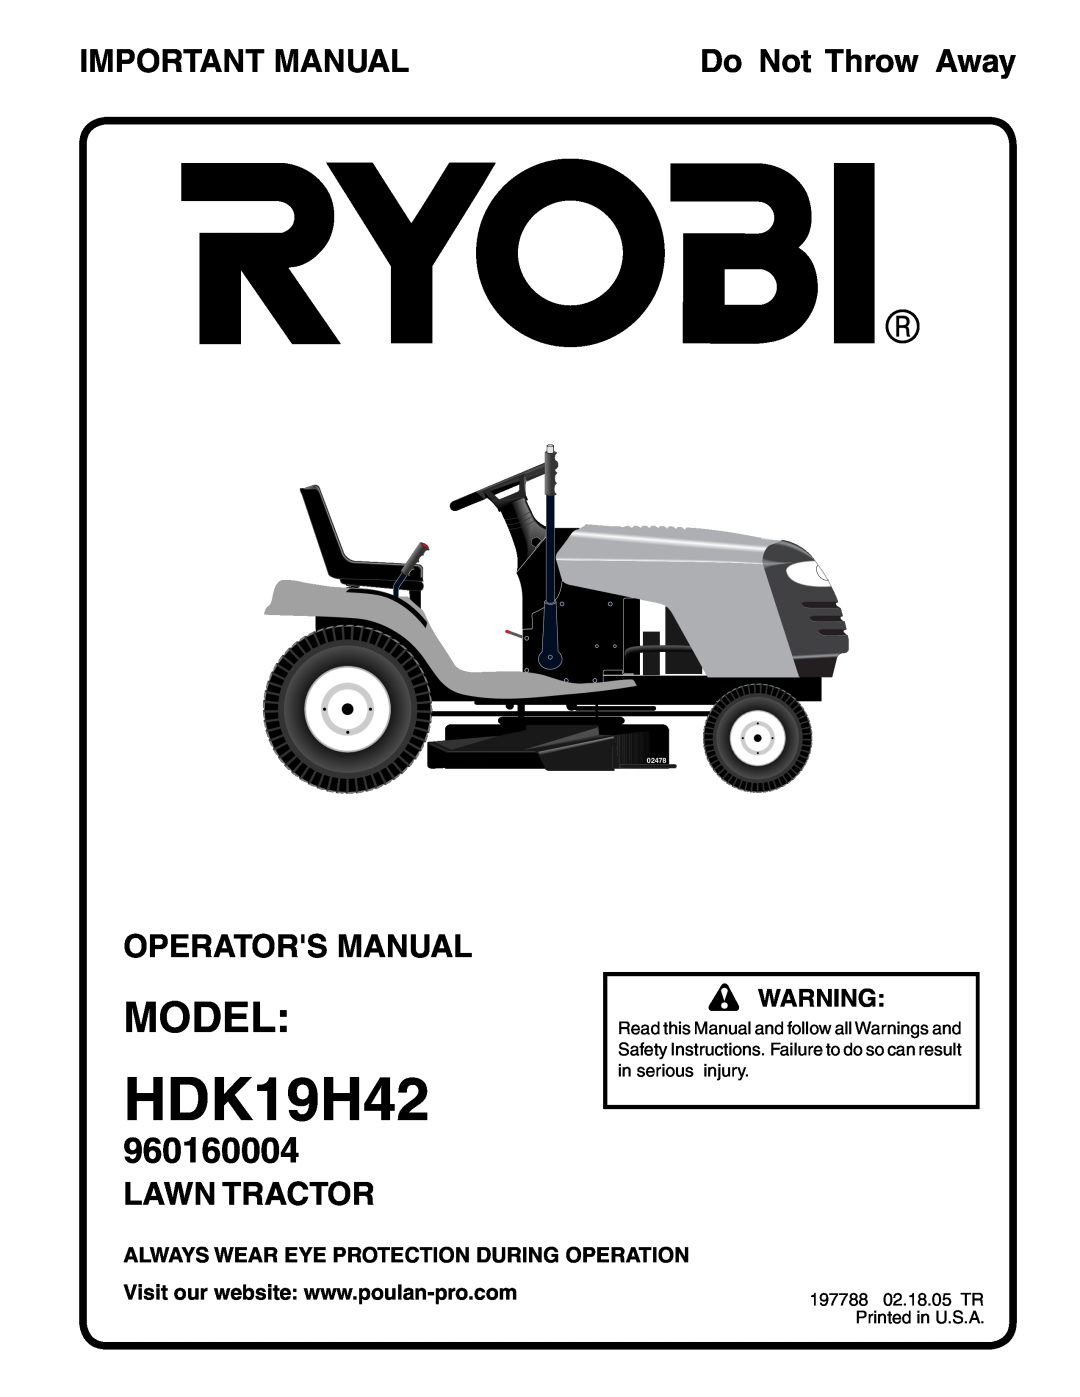 Ryobi 197788 manual Model, Important Manual, Do Not Throw Away, Operators Manual, Lawn Tractor, HDK19H42, 960160004, 02478 